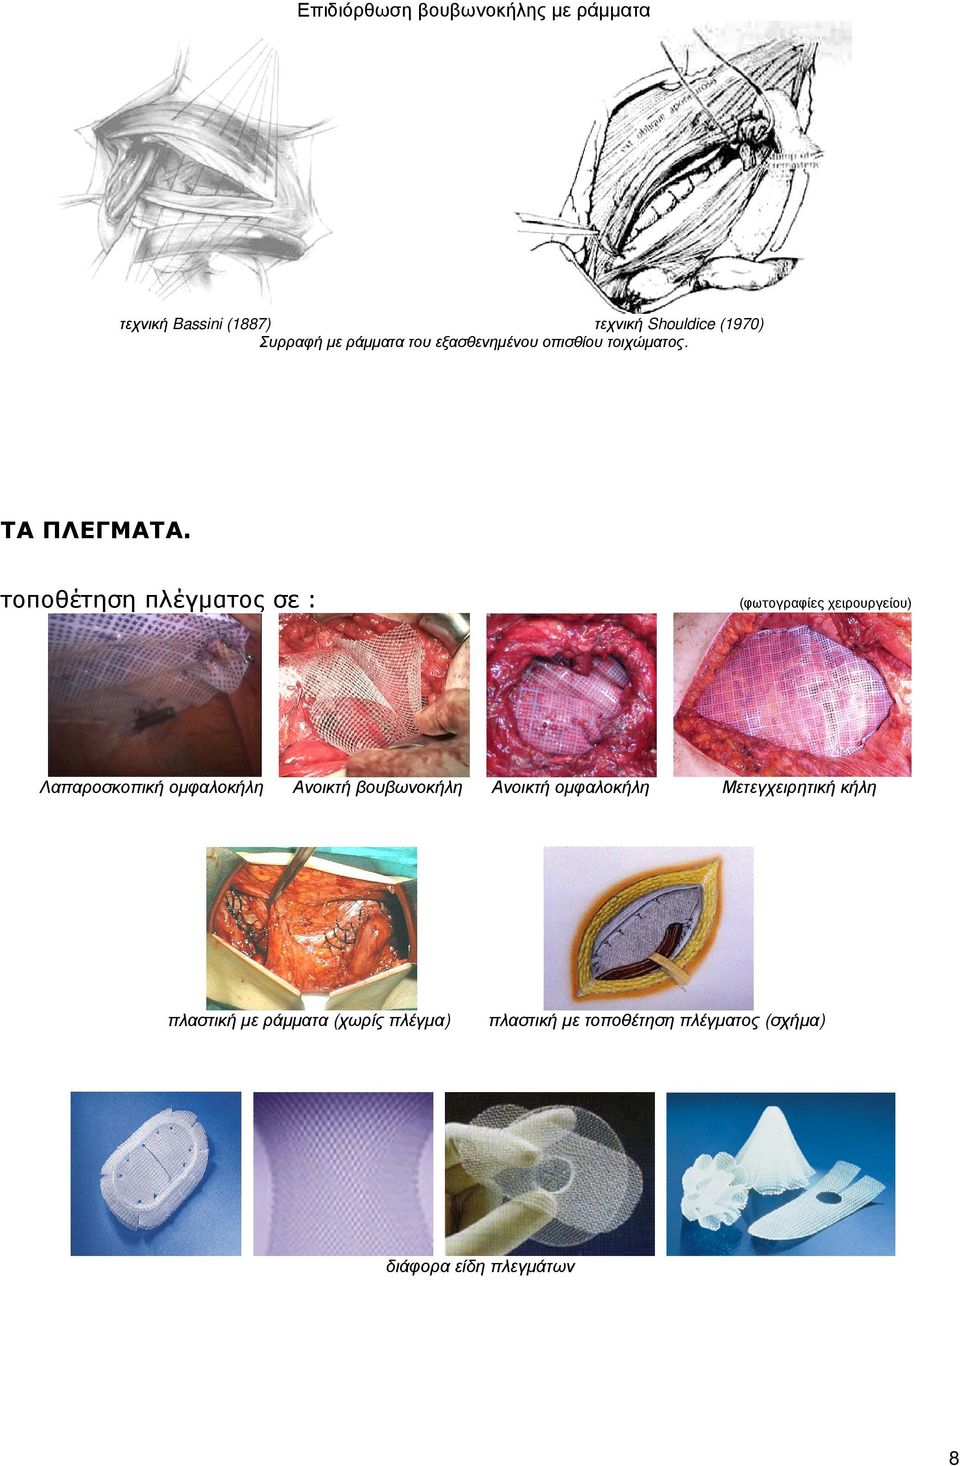 τοποθέτηση πλέγµατος σε : Λαπαροσκοπική οµφαλοκήλη (φωτογραφίες χειρουργείου) Ανοικτή βουβωνοκήλη